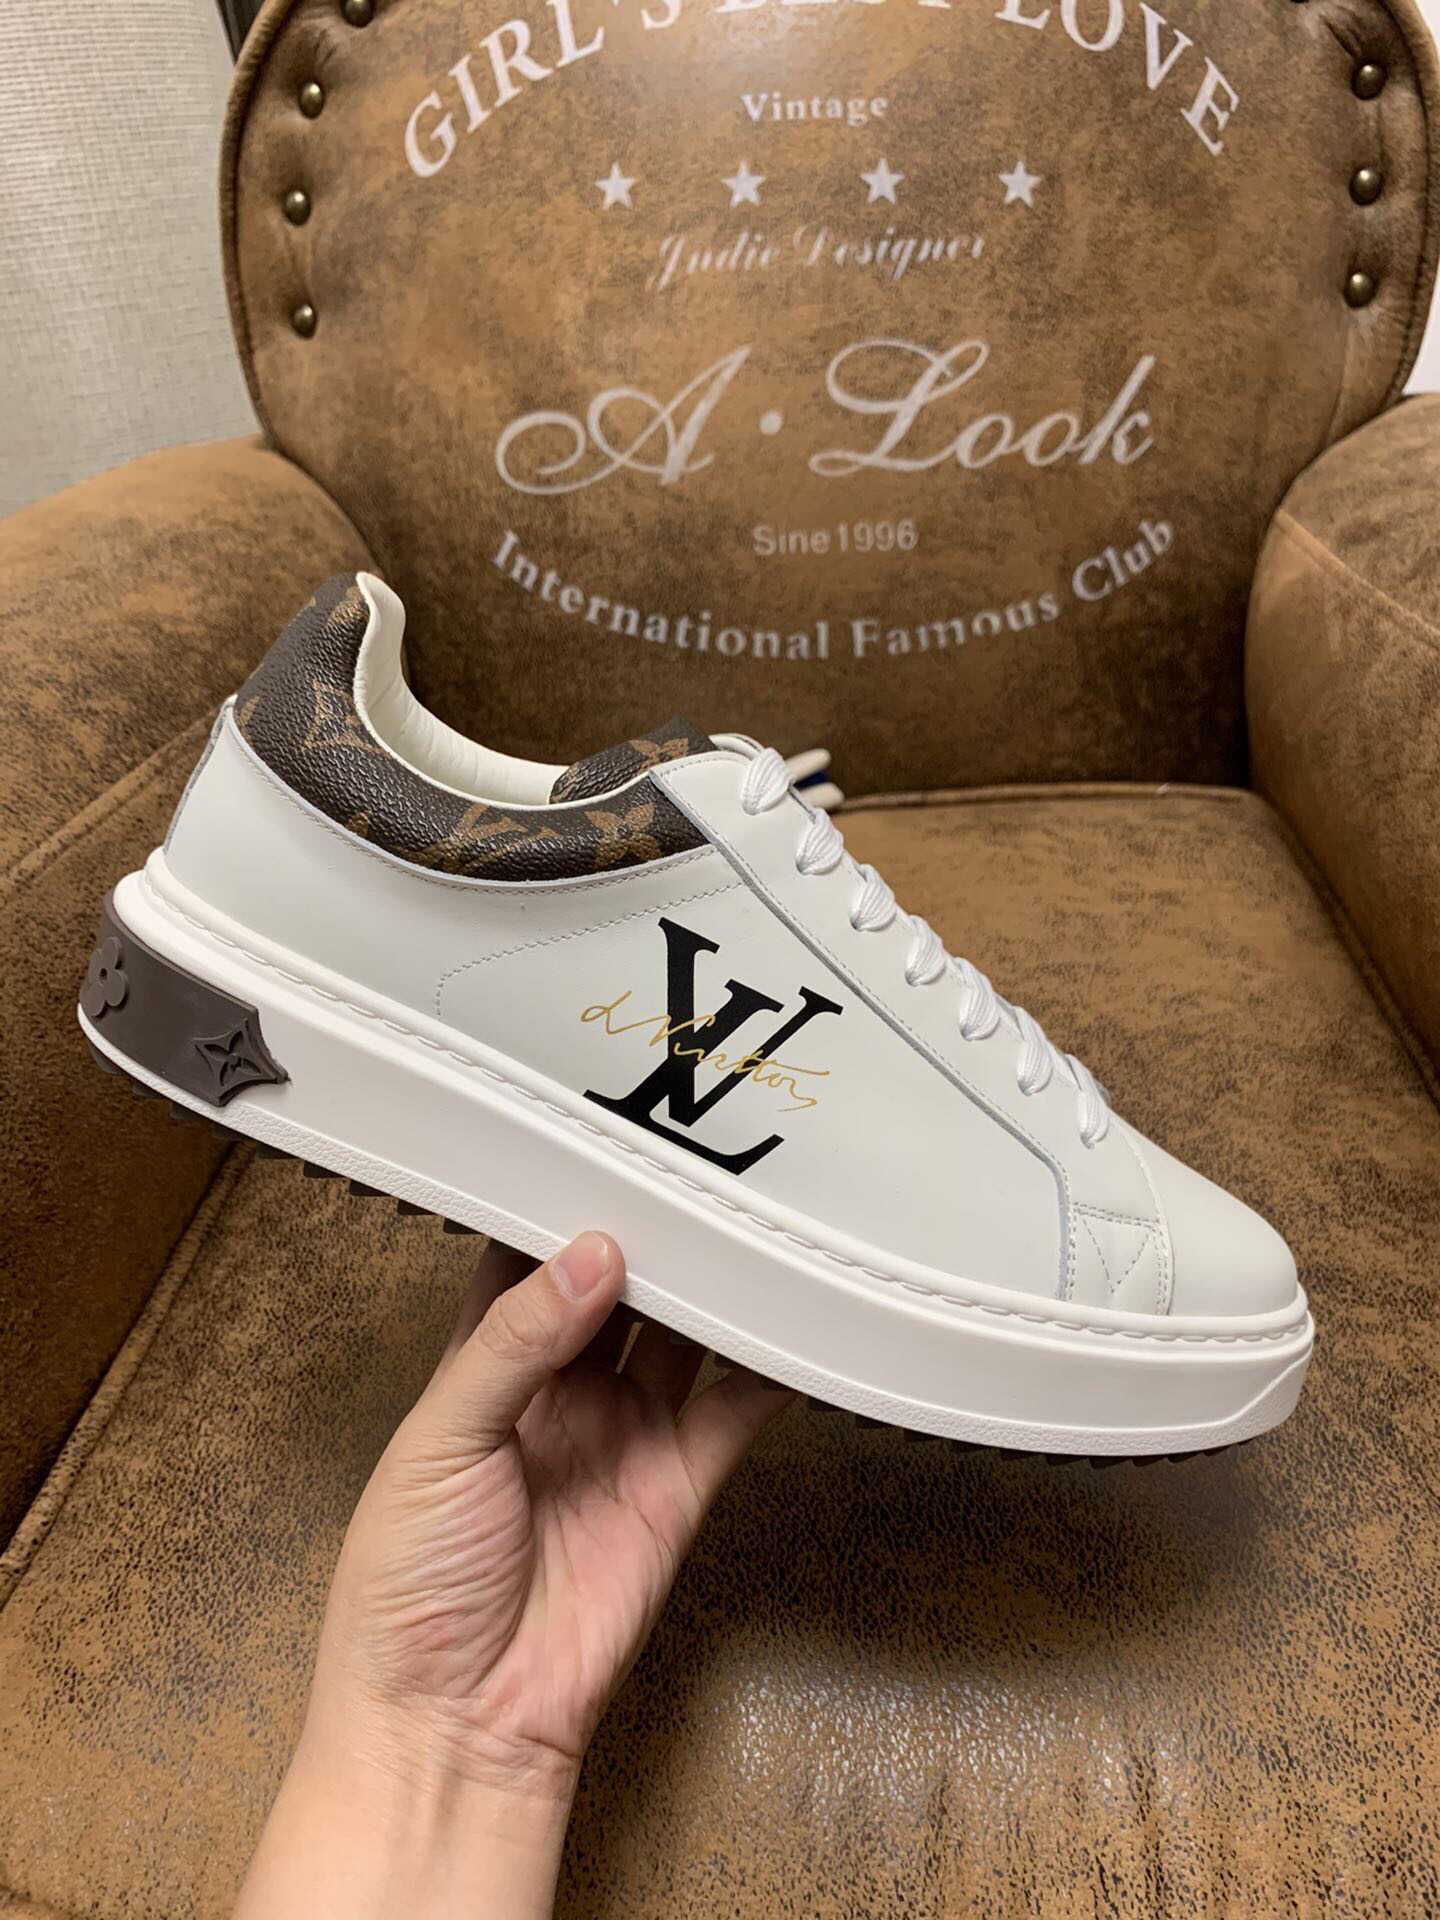 Louis Vuitton路易威登 原版代购品质、顶级原版男士运动鞋